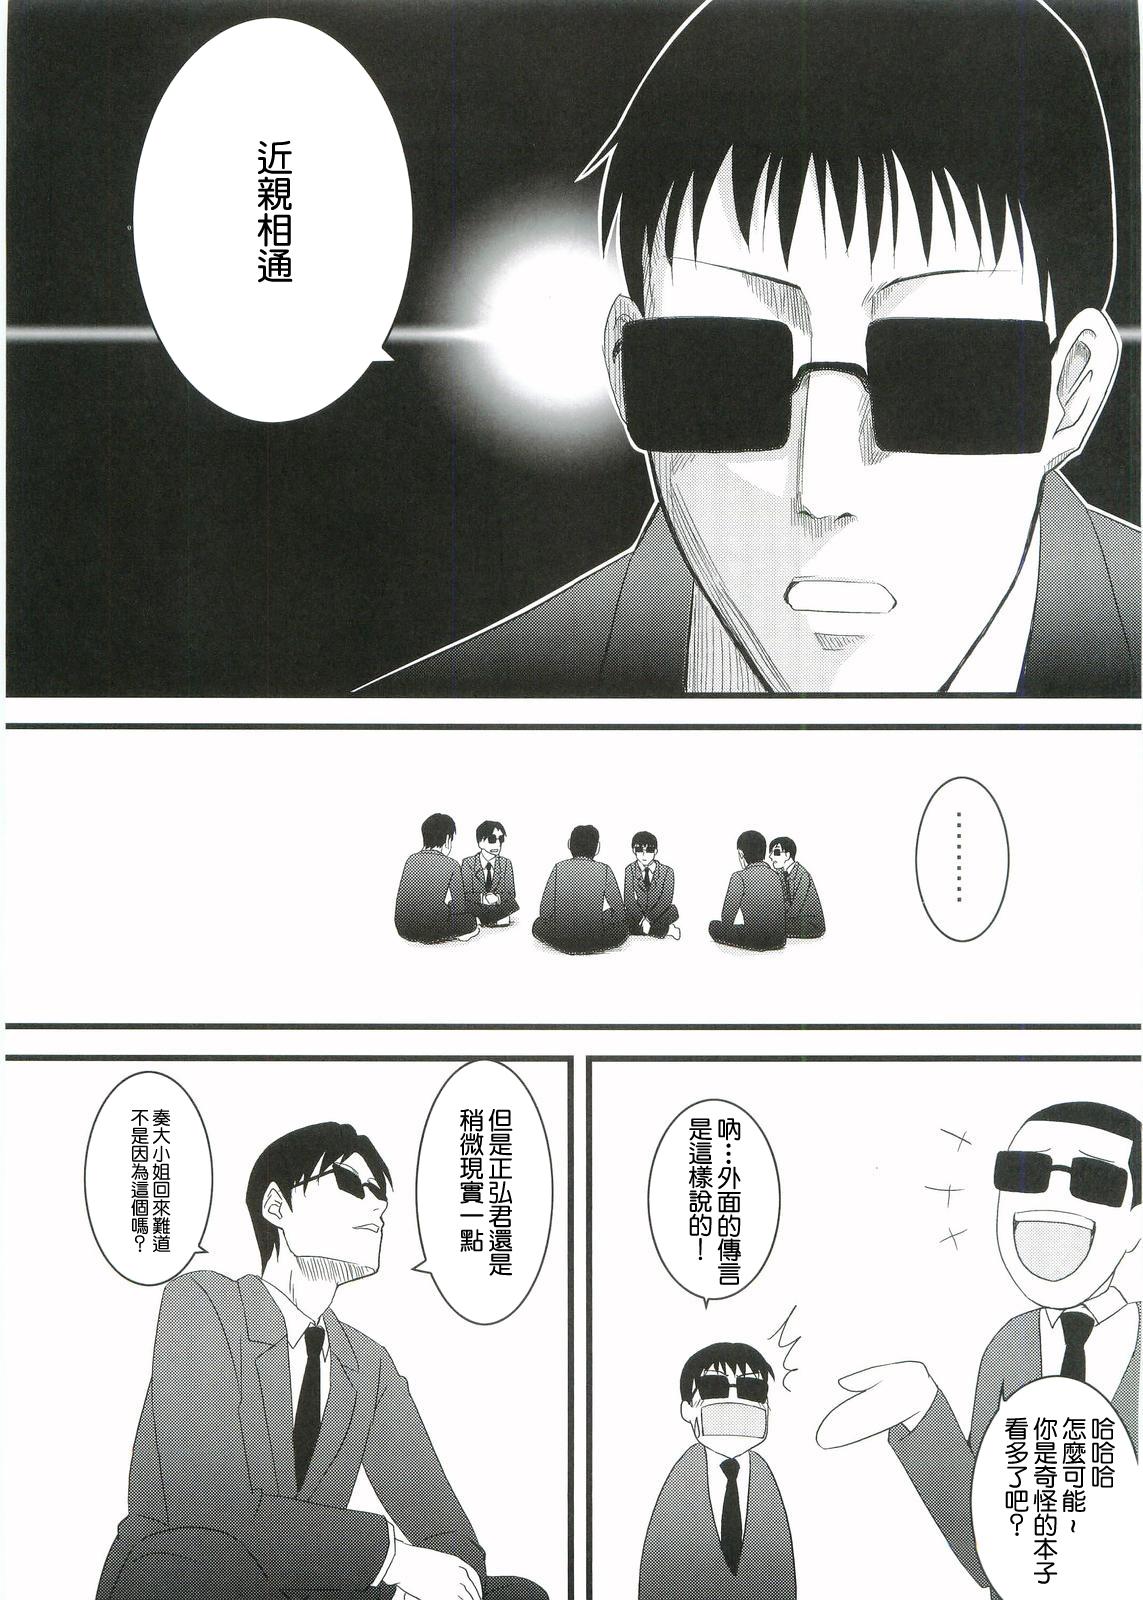 Petite Teen Kouhukuya no Ehon Gokujo 2 - Gokujou seitokai | best student council Curious - Page 4